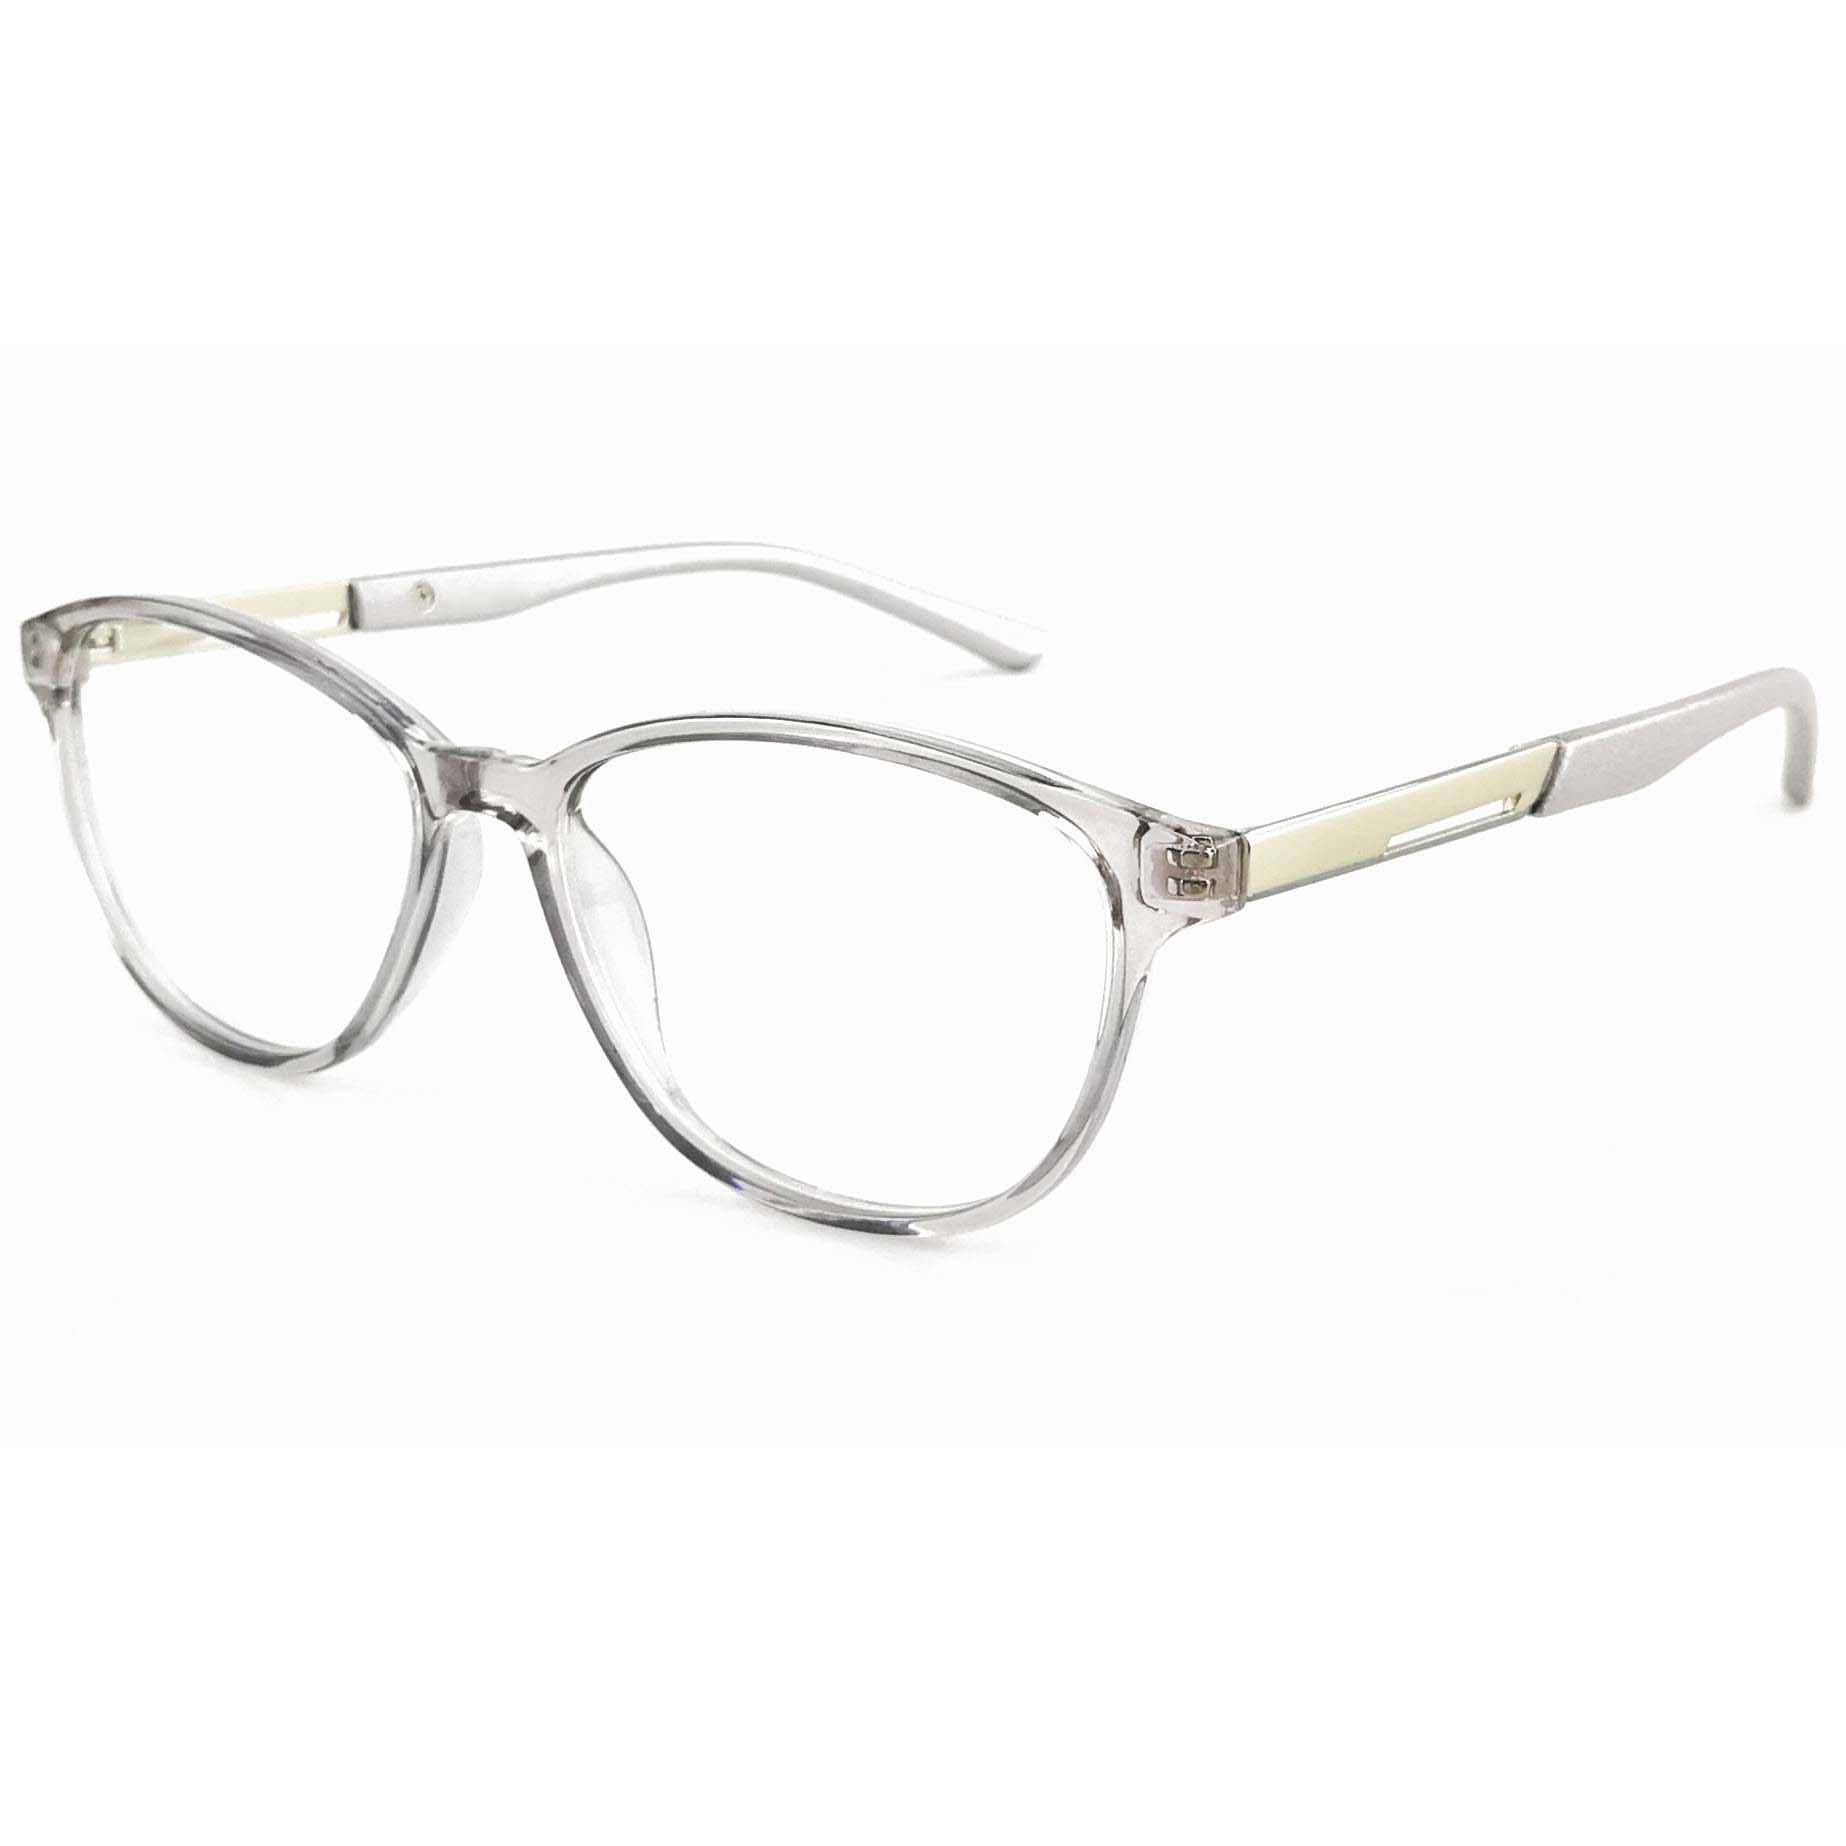 Eugenia optical glasses-2